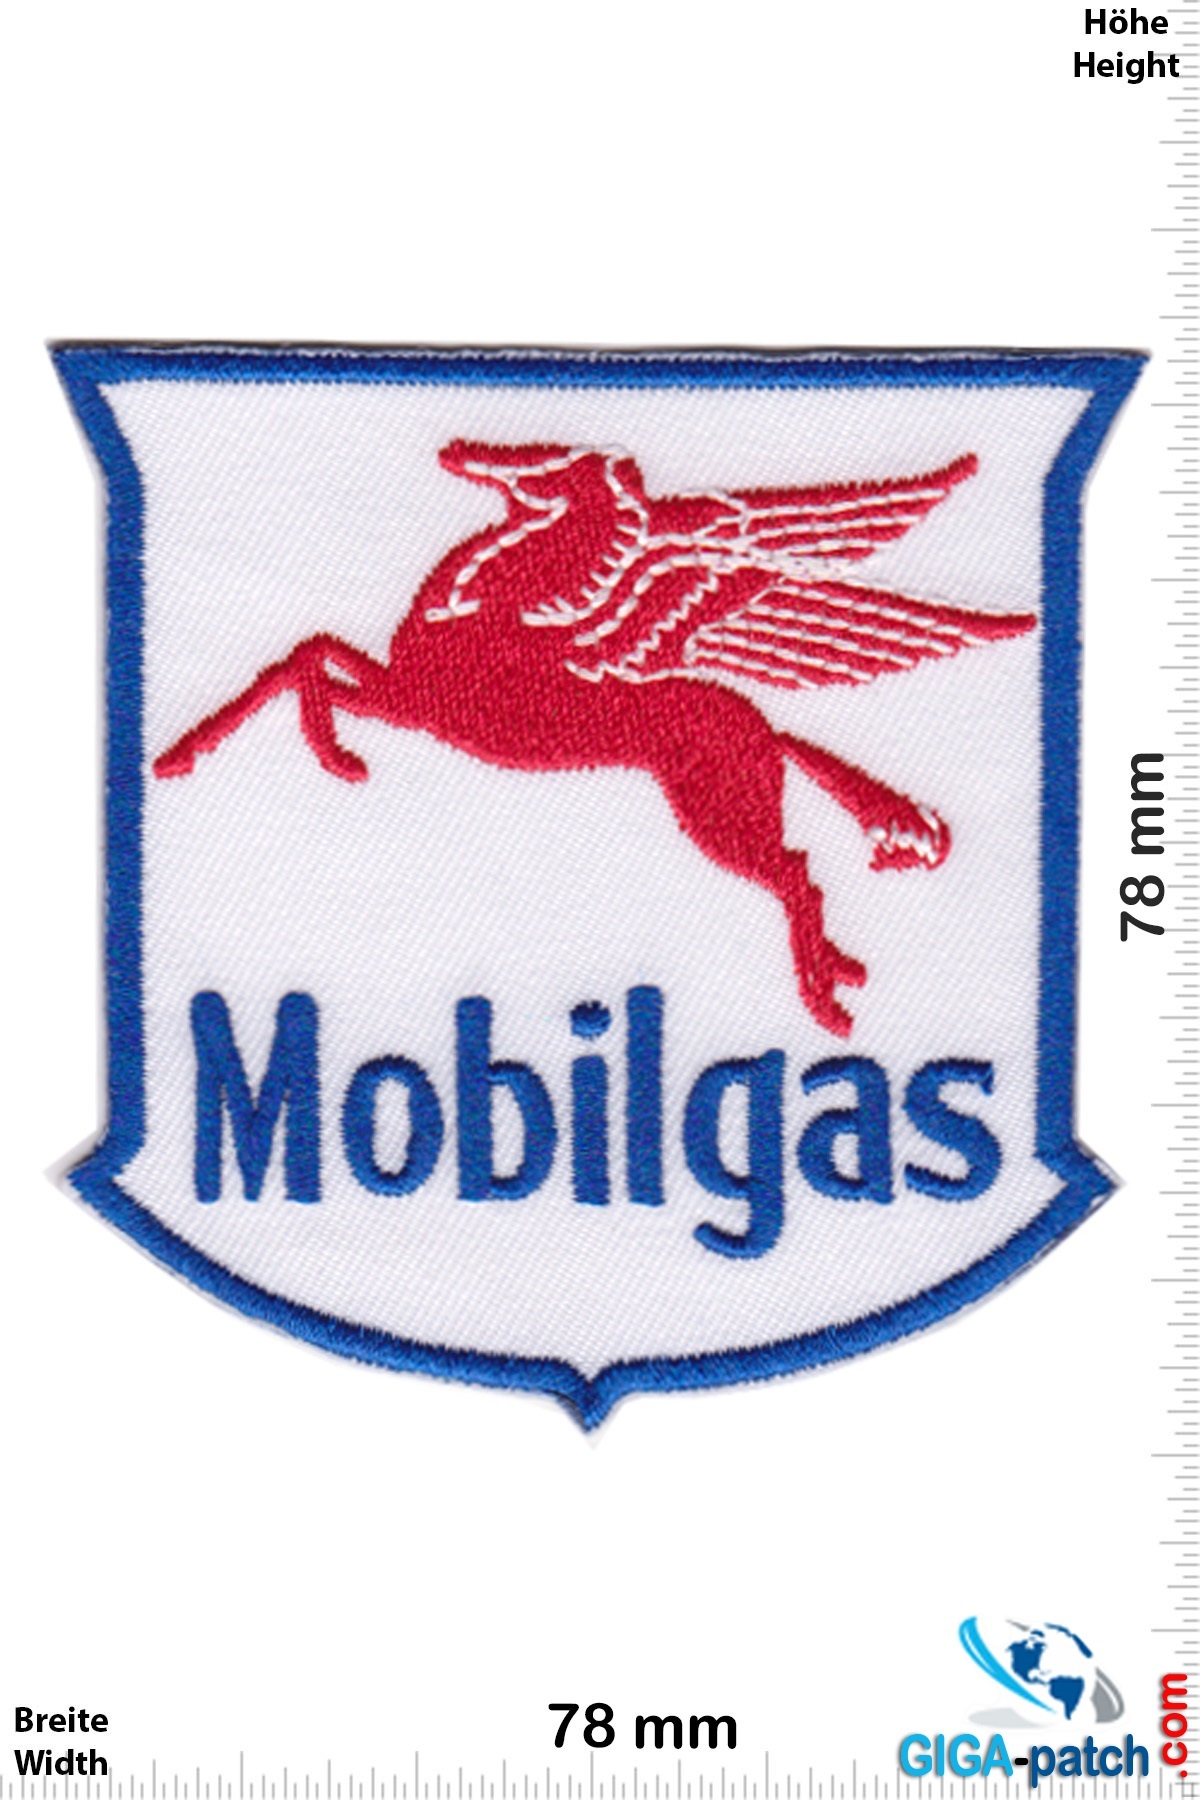 Mobilgas - Gasoline